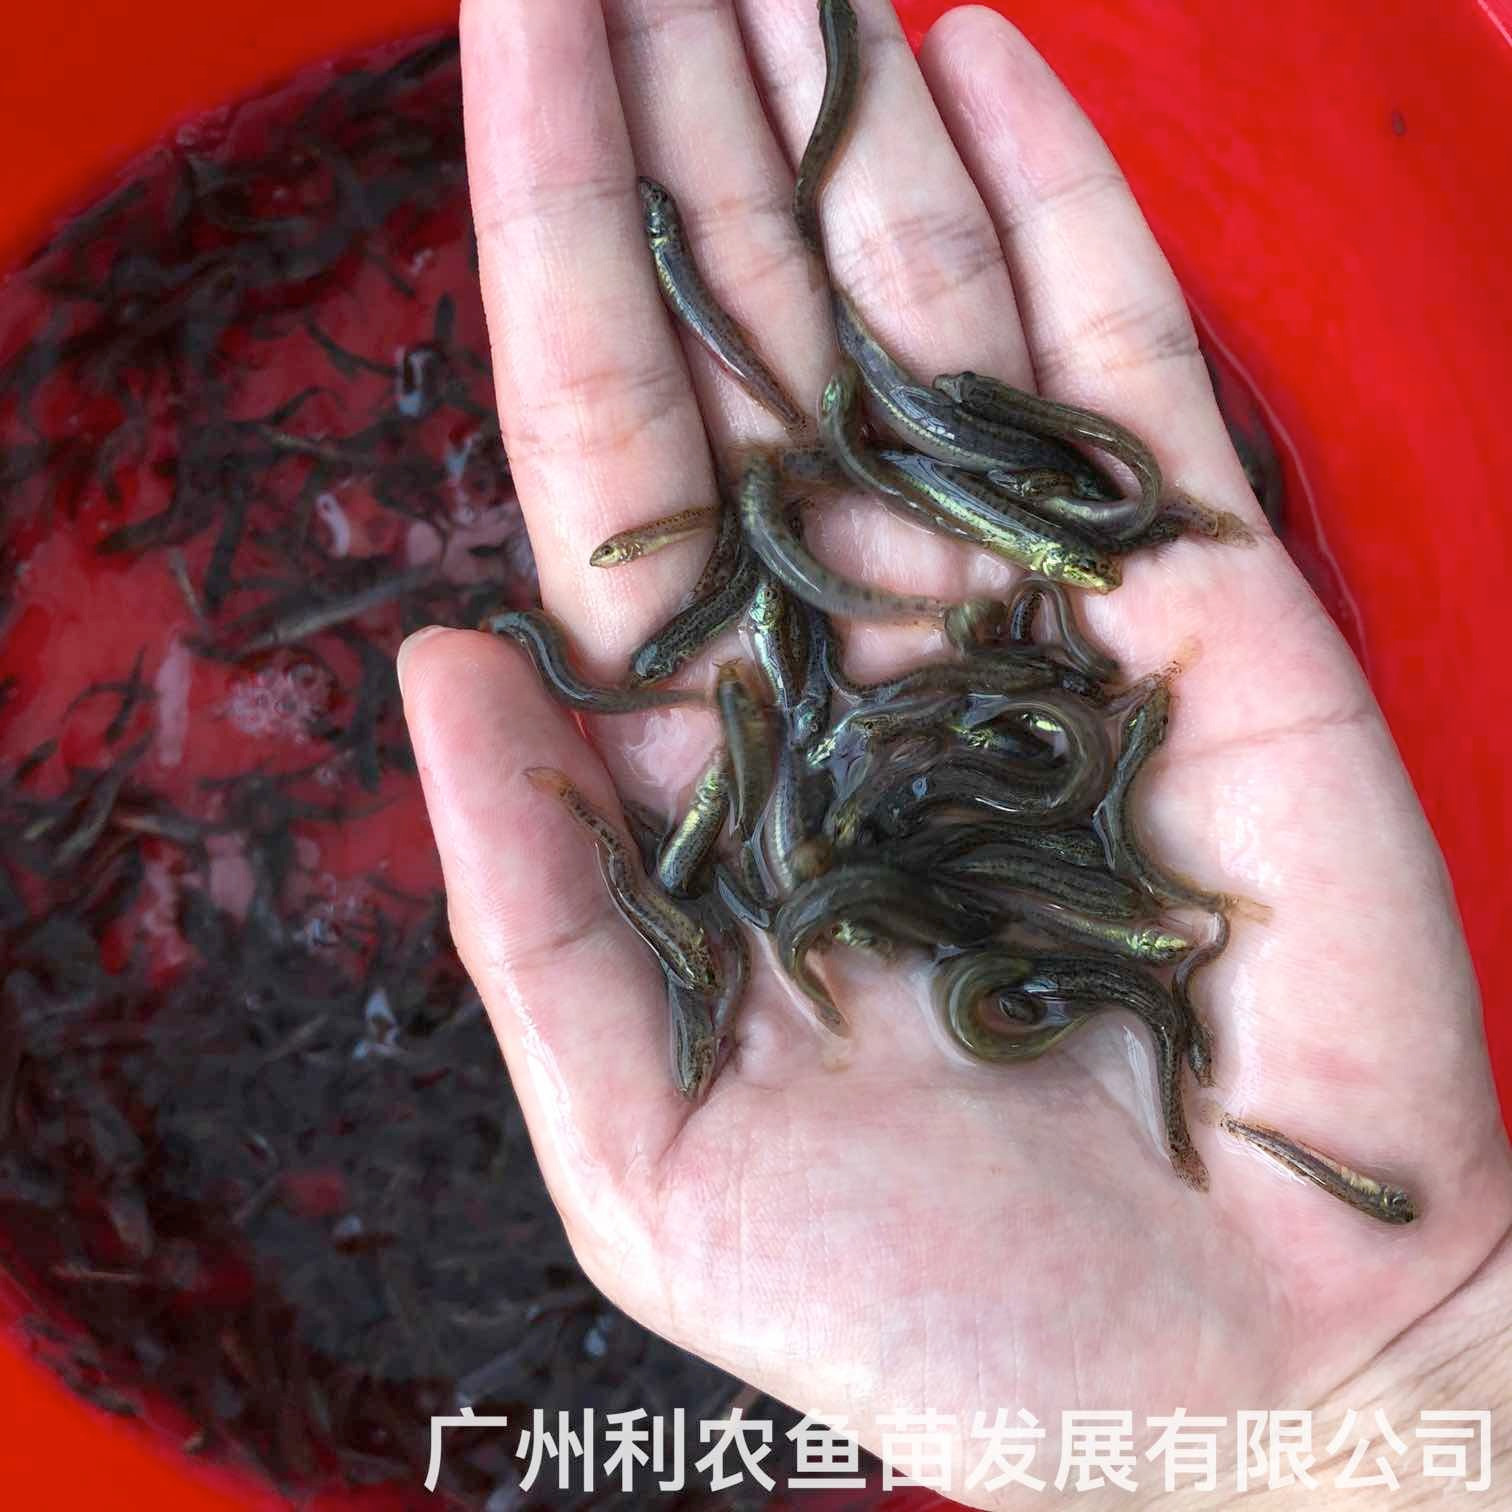 广东阳江台湾泥鳅苗出售出售广东中山泥鳅鱼苗批发养殖基地